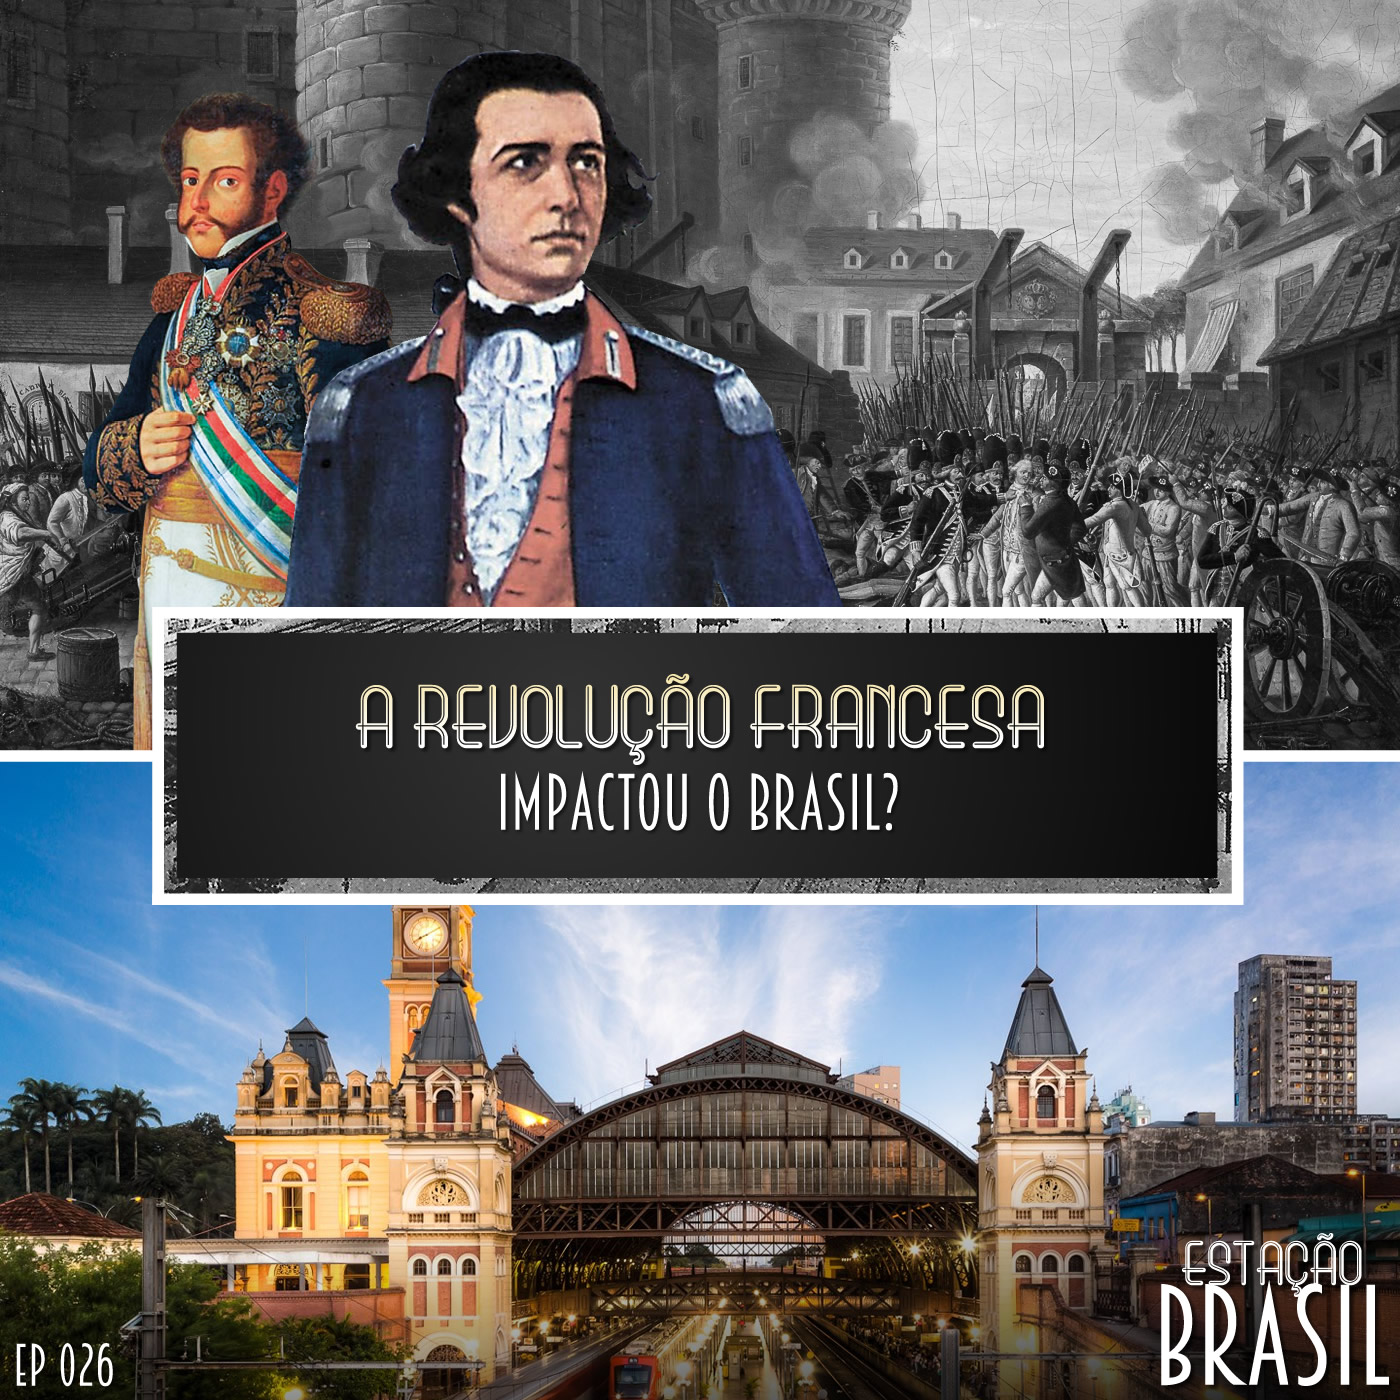 A Revolução Francesa impactou o Brasil?